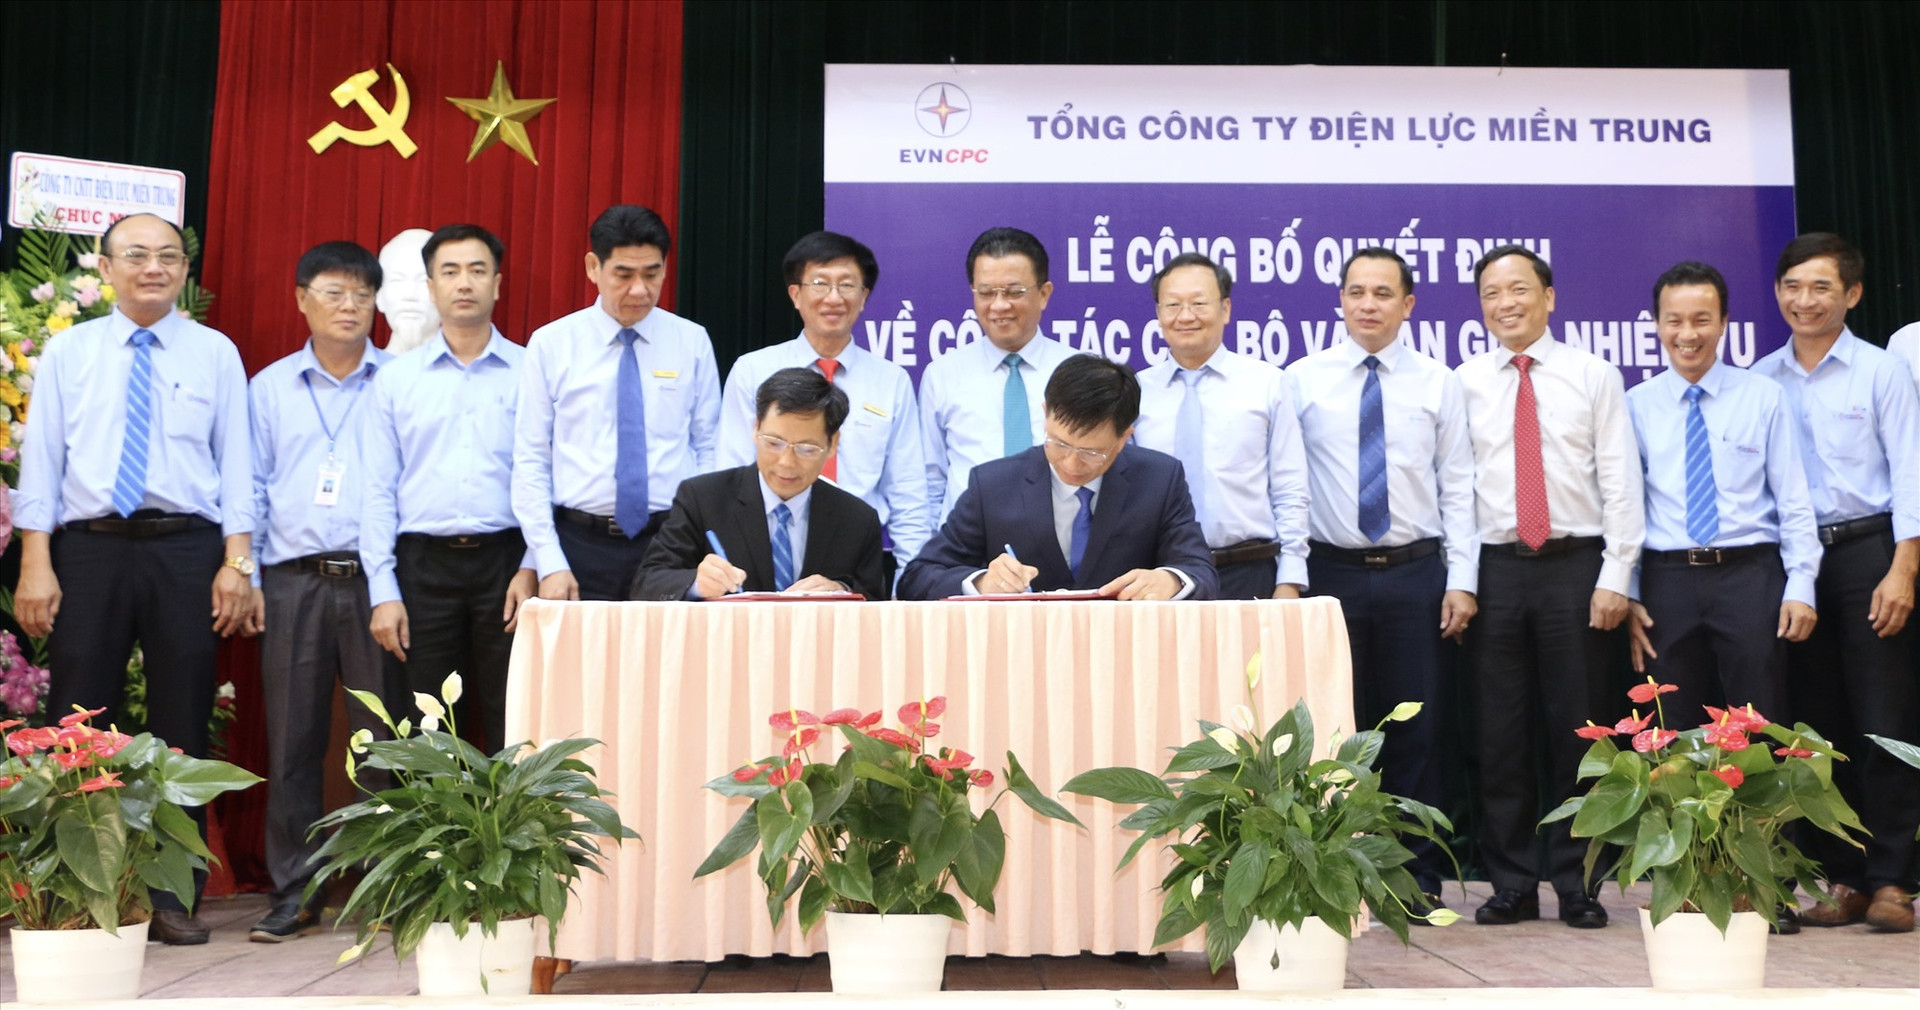 Ông Nguyễn Minh Tuấn (ngồi bên trái) và ông Nguyễn Hữu Khánh ký biên bản bàn giao.